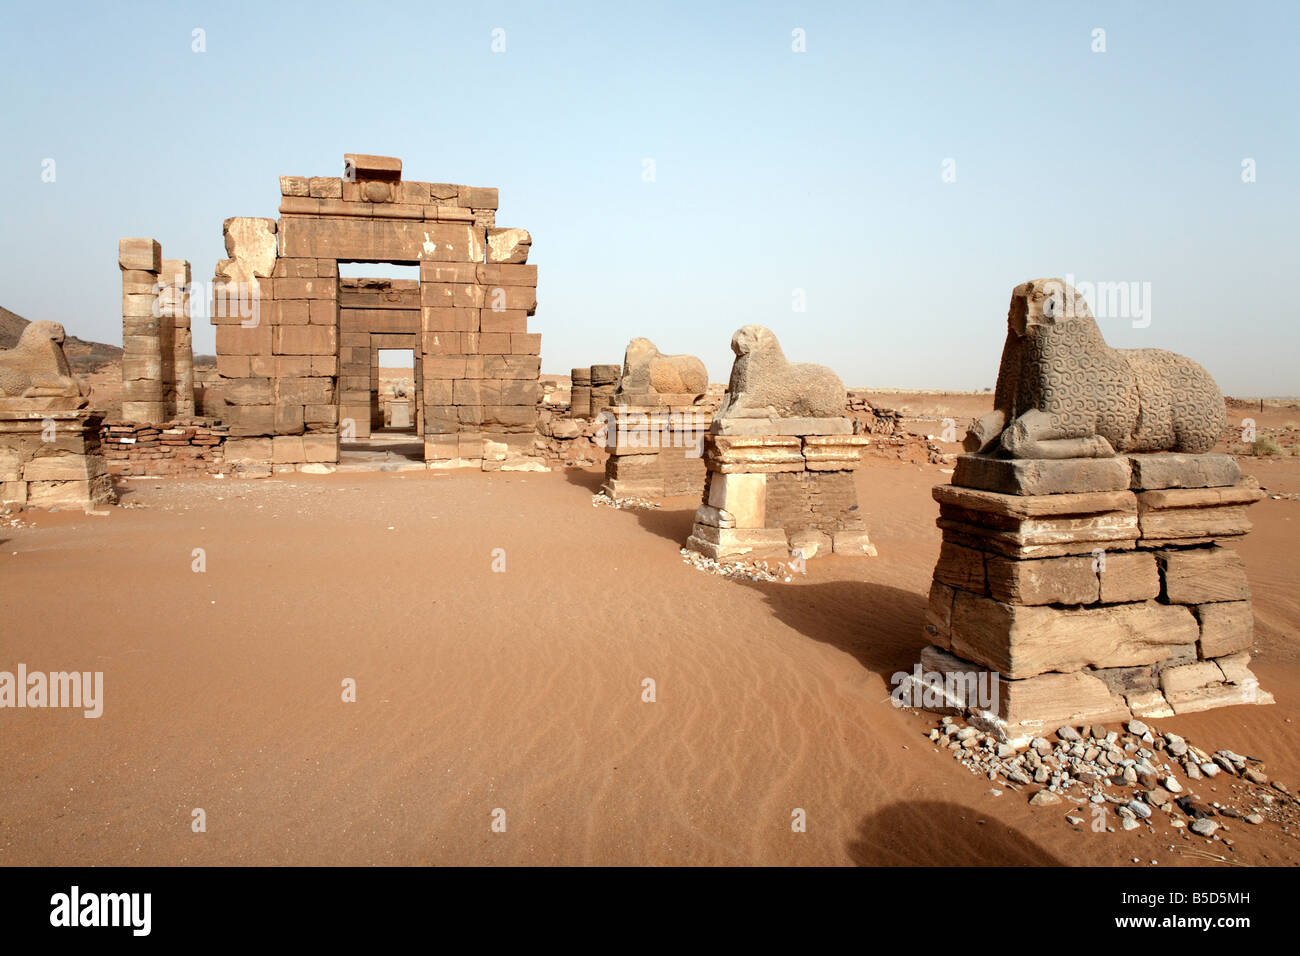 Le Temple d'AMON, un des temples de Naqa Méroïtique, Soudan, Afrique Banque D'Images